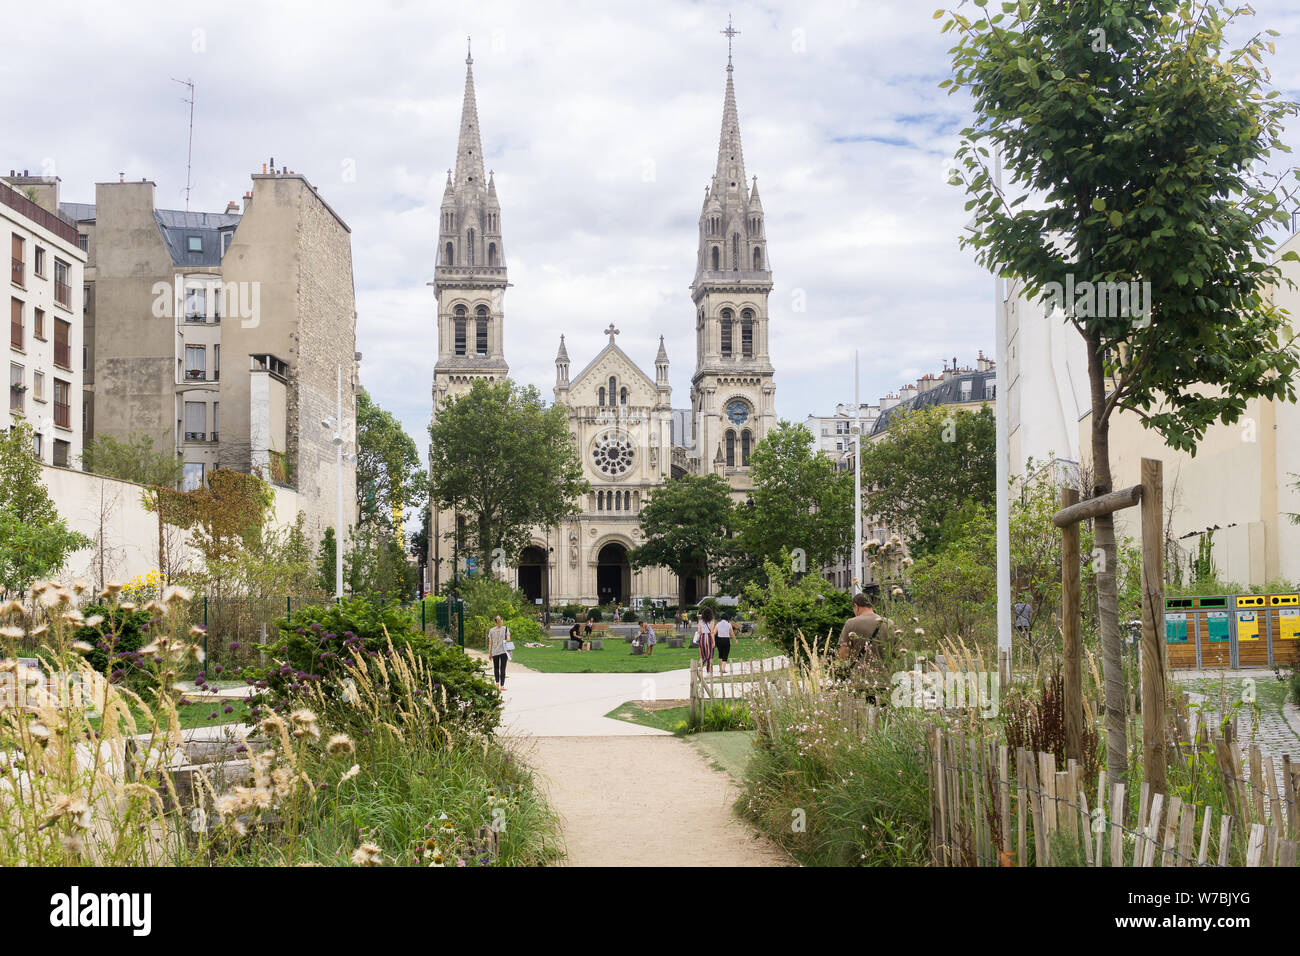 Paris re-Begrünung der Stadt - Le Jardin Truillot ist ein Park im 11. arrondissement entwickelt als Teil der Stadt wiederbegrünung. Frankreich, Europa. Stockfoto